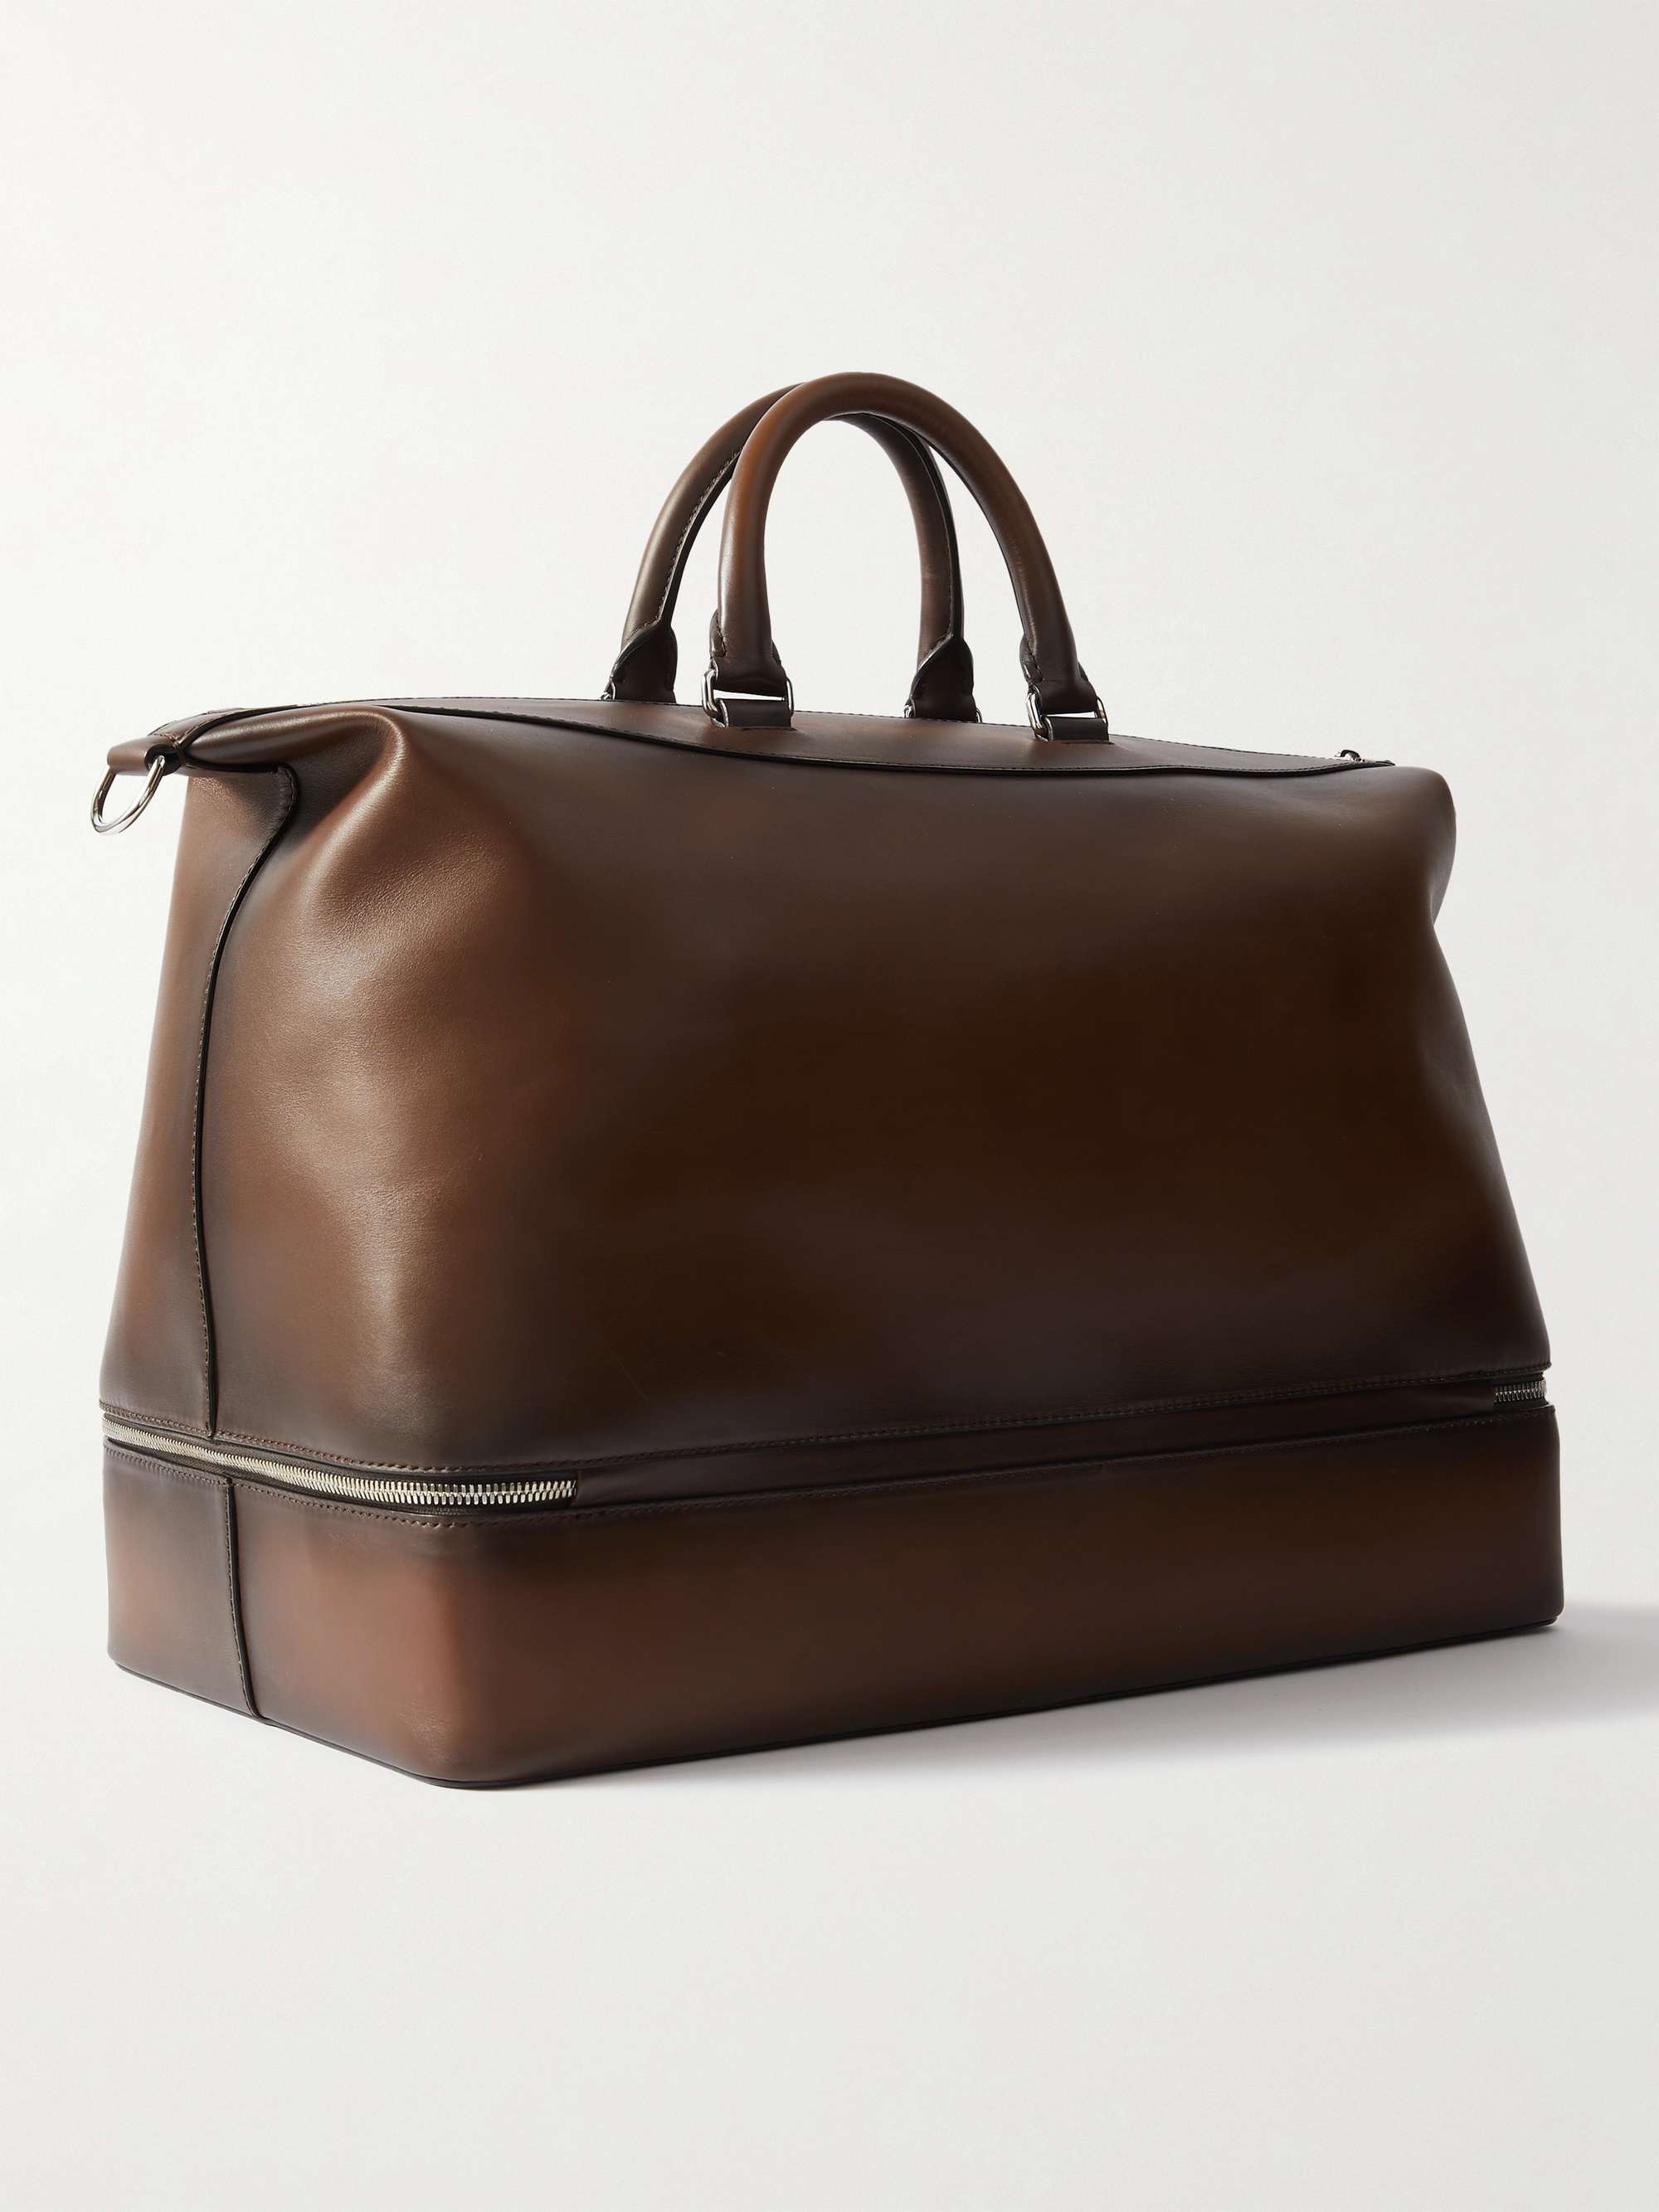 BERLUTI Venezia Leather Holdall Bag for Men | MR PORTER